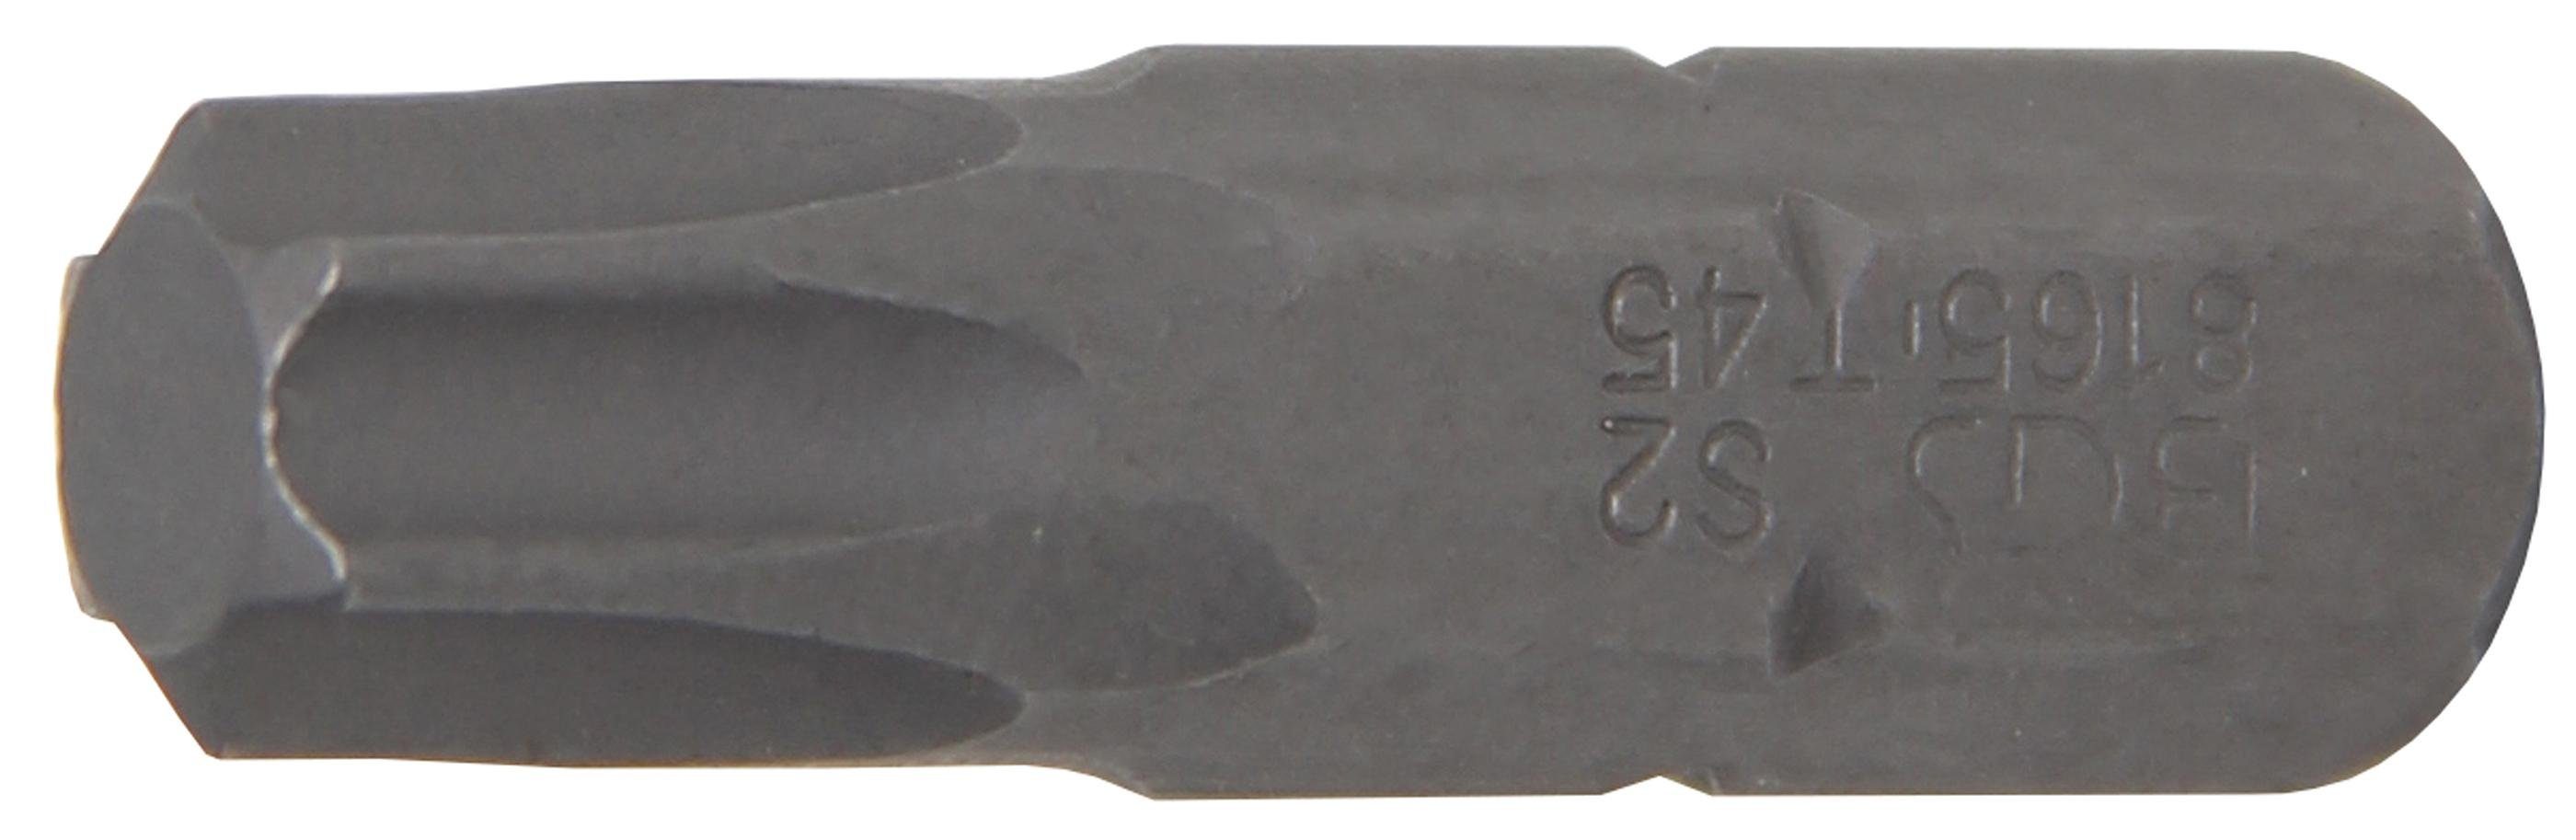 BGS technic Bit-Schraubendreher Außensechskant (für Torx) mm 8 Bit, (5/16), T-Profil Antrieb T45